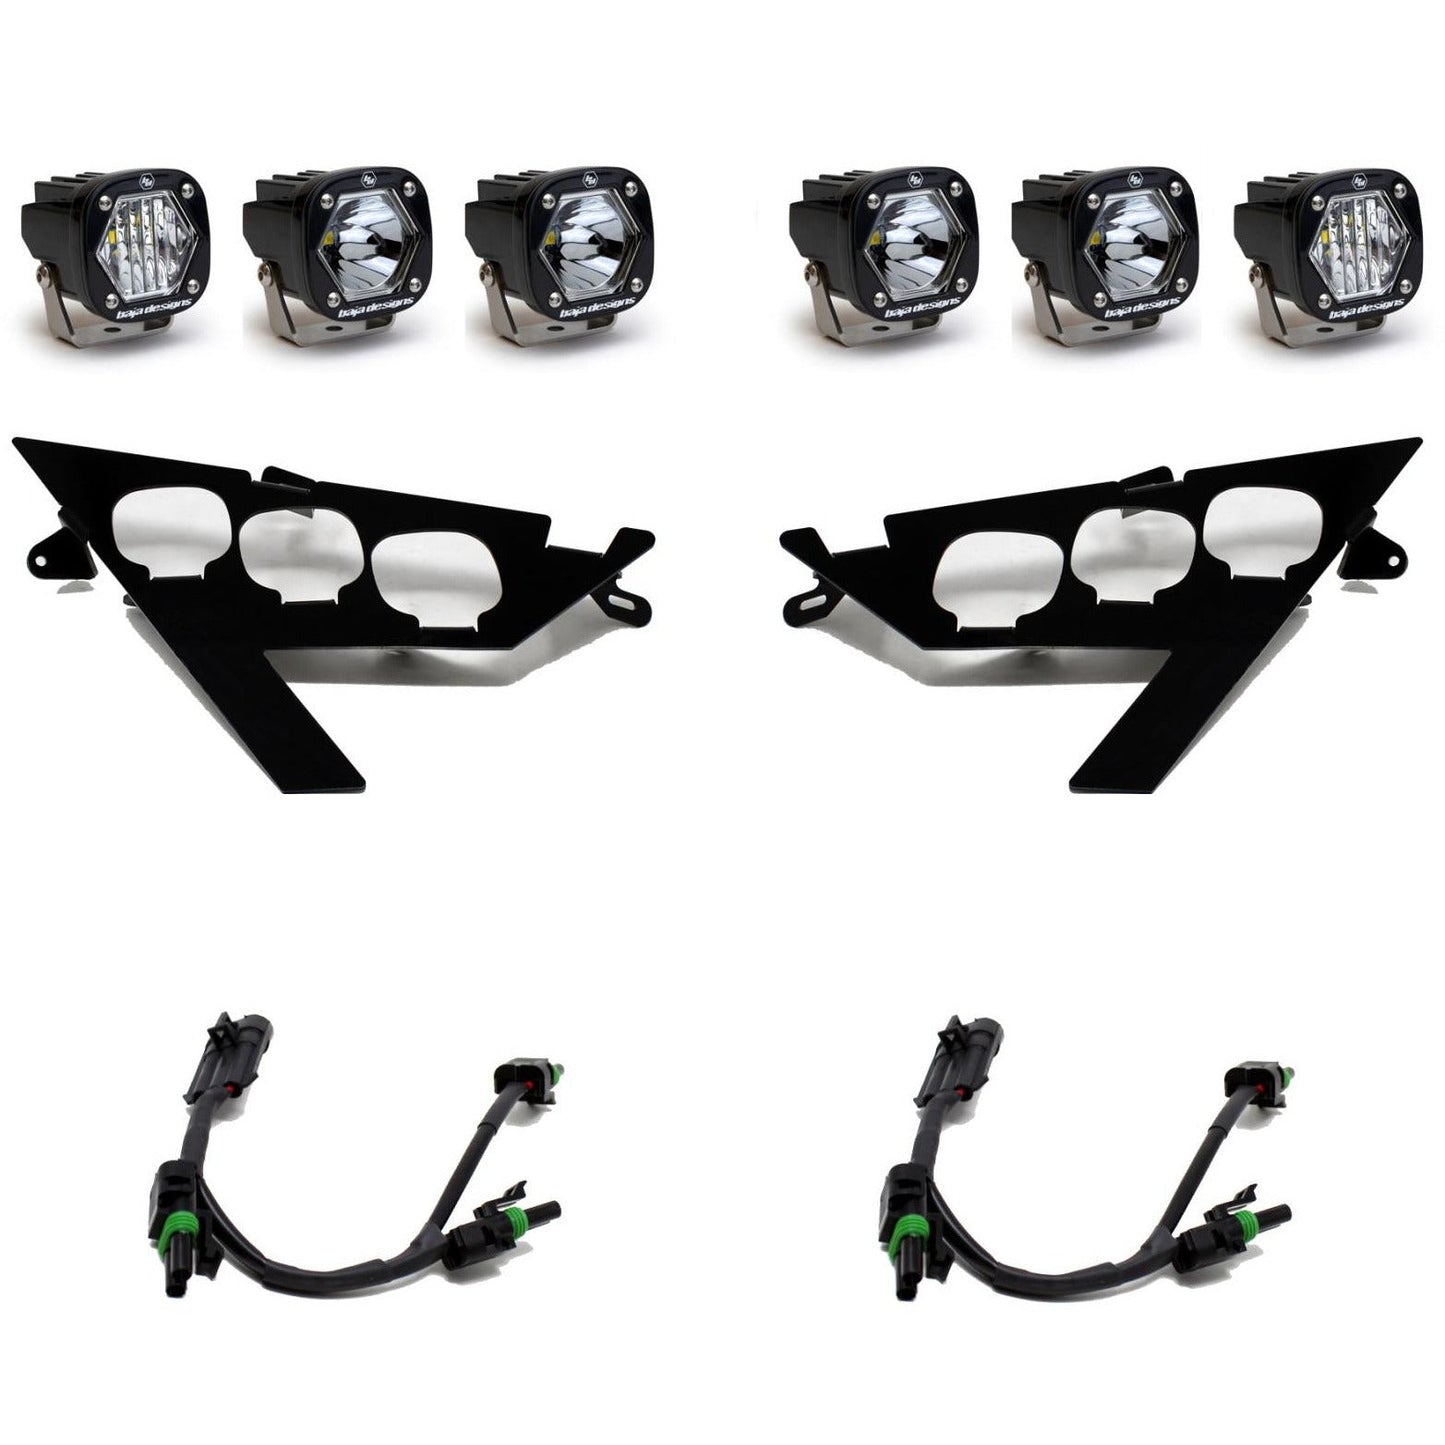 Polaris RZR Pro / Turbo R S1 Triple LED Headlight Kit